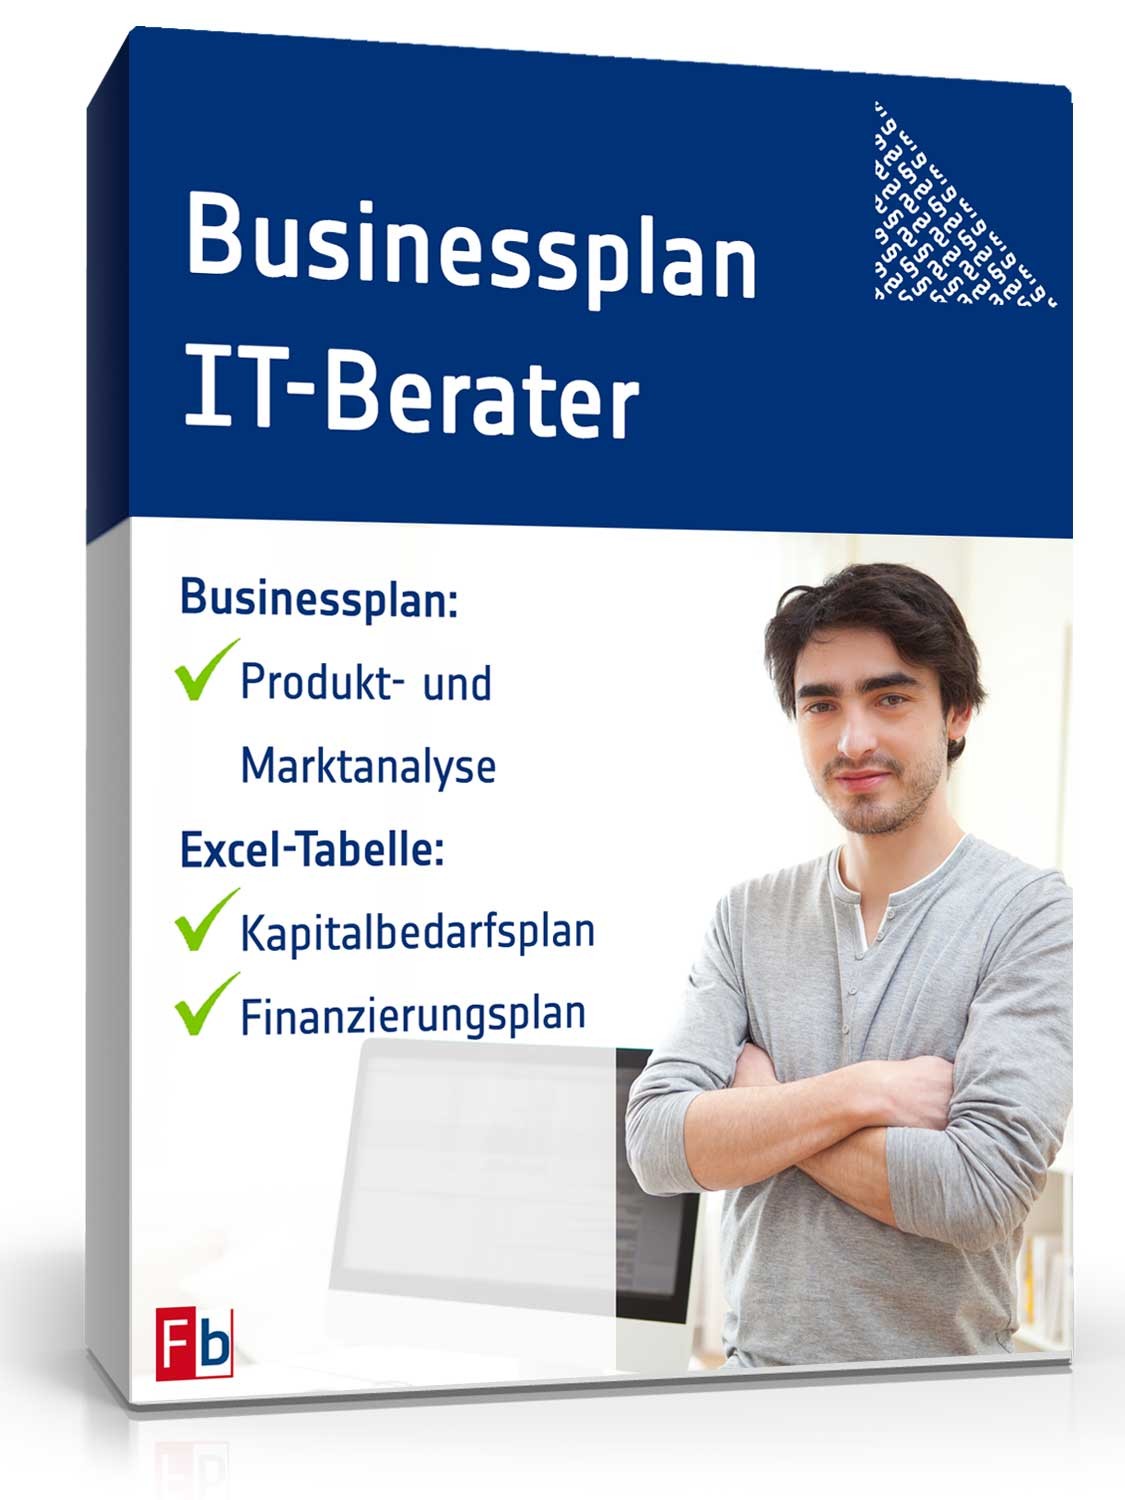 Hauptbild des Produkts: Businessplan IT-Berater